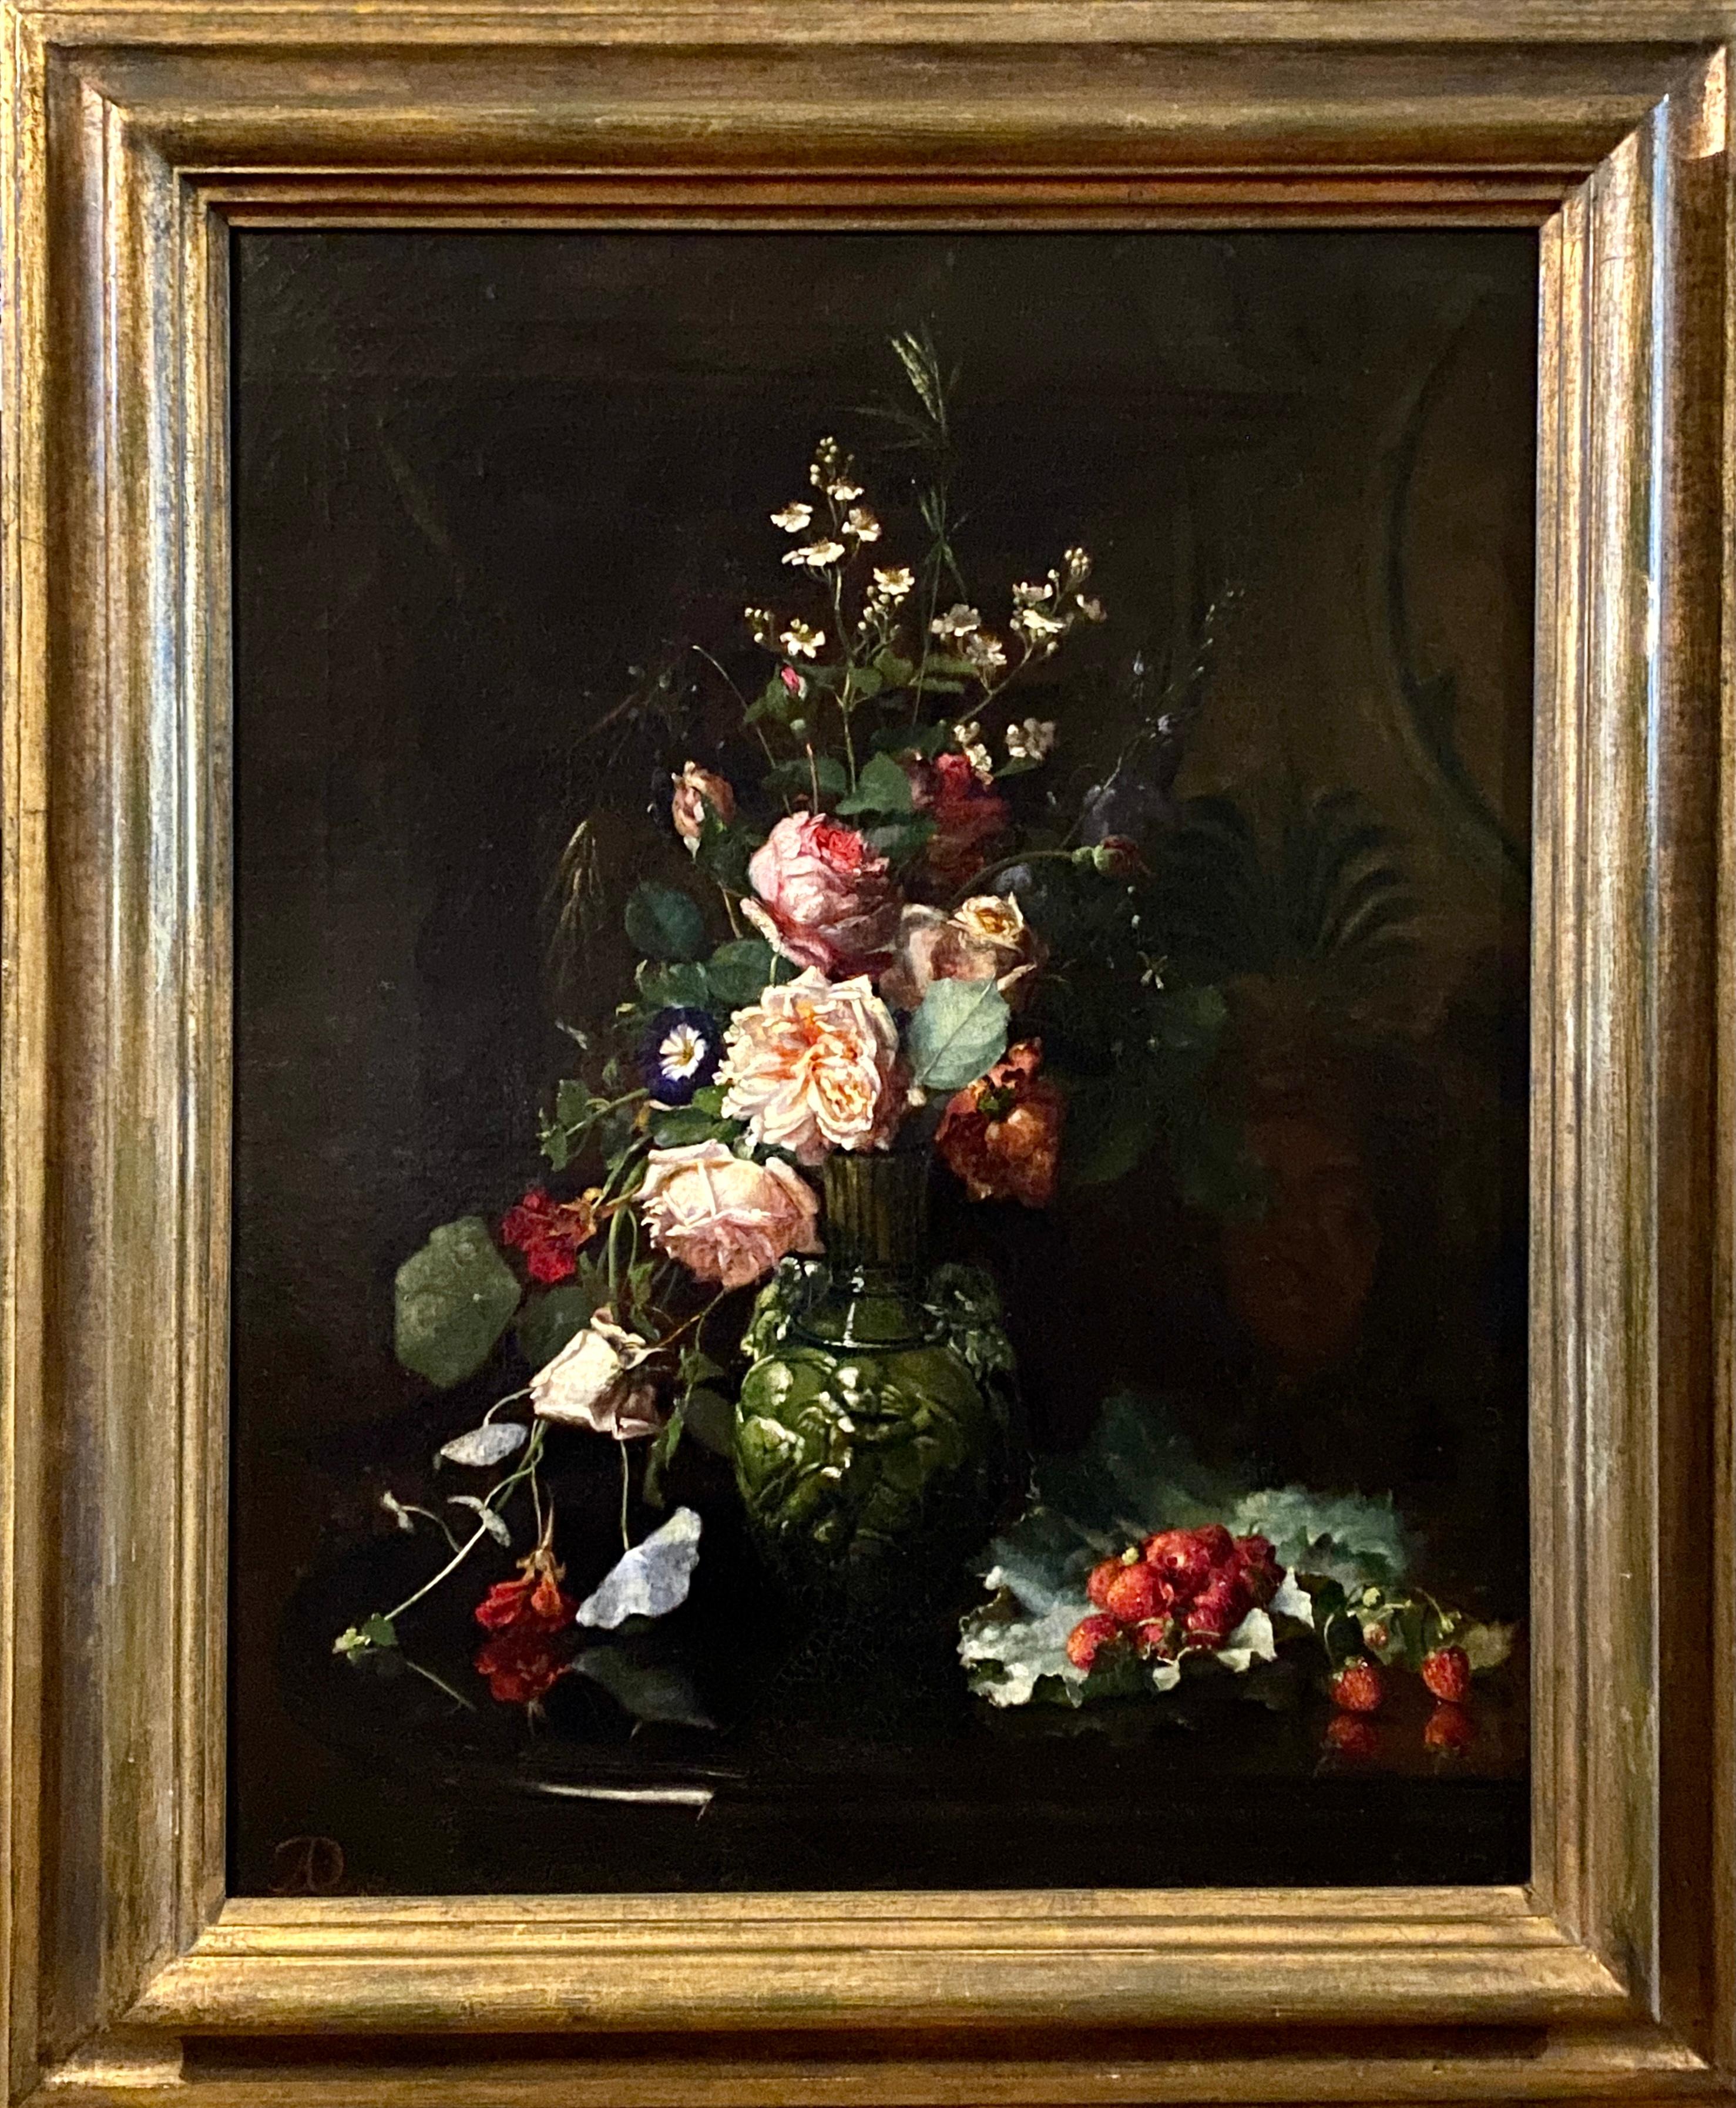 Dohlmann Augusta Johanne Henriette Portrait Painting – Stillleben mit Blumen und verstecktem Porträt, Augusta Dohlmann, 1847 - 1914